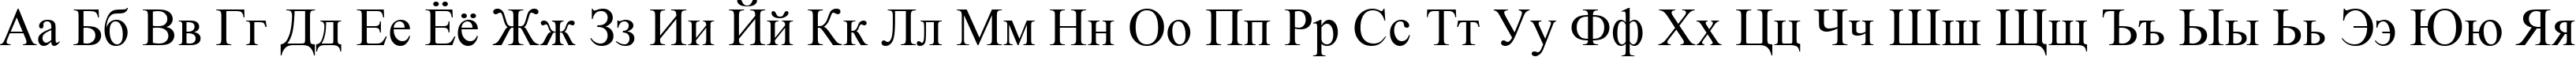 Пример написания русского алфавита шрифтом font239